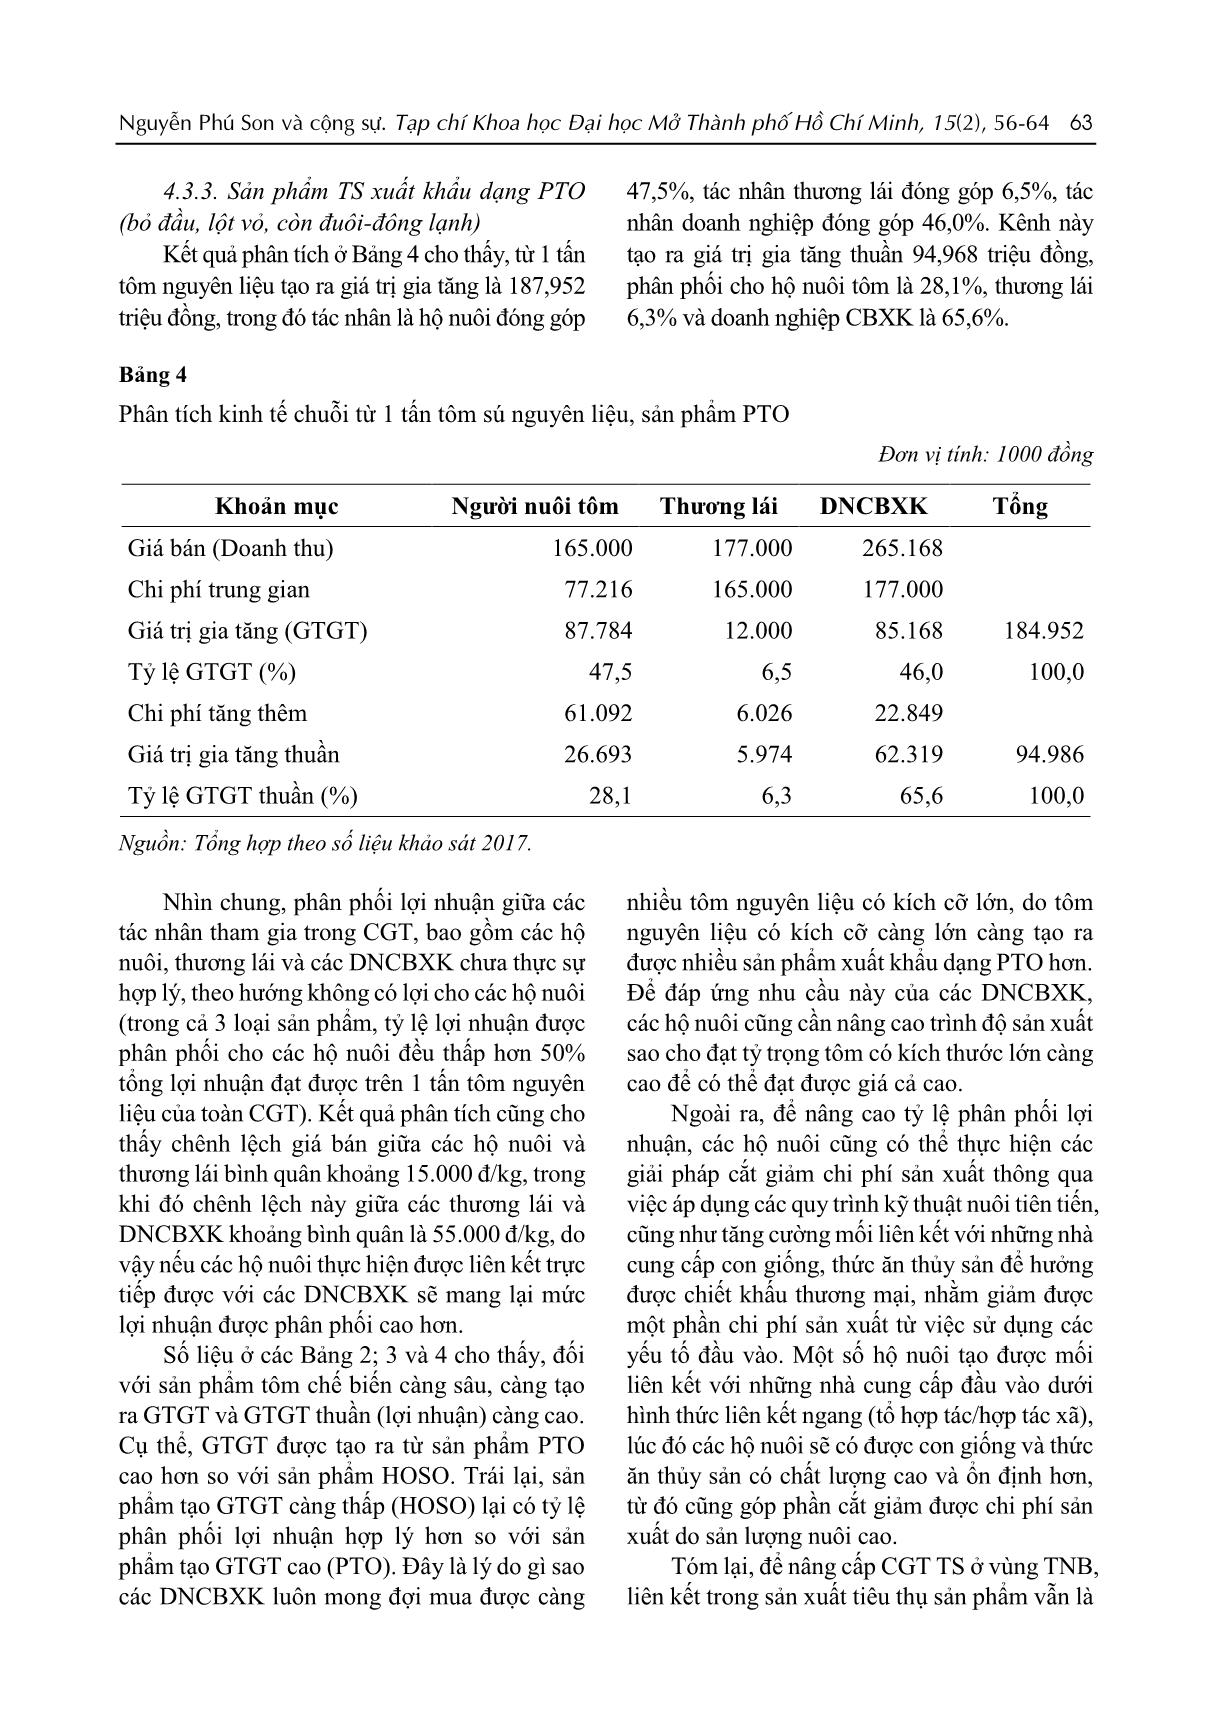 Chuỗi giá trị tôm sú Quảng Canh ở vùng Tây Nam Bộ trang 8